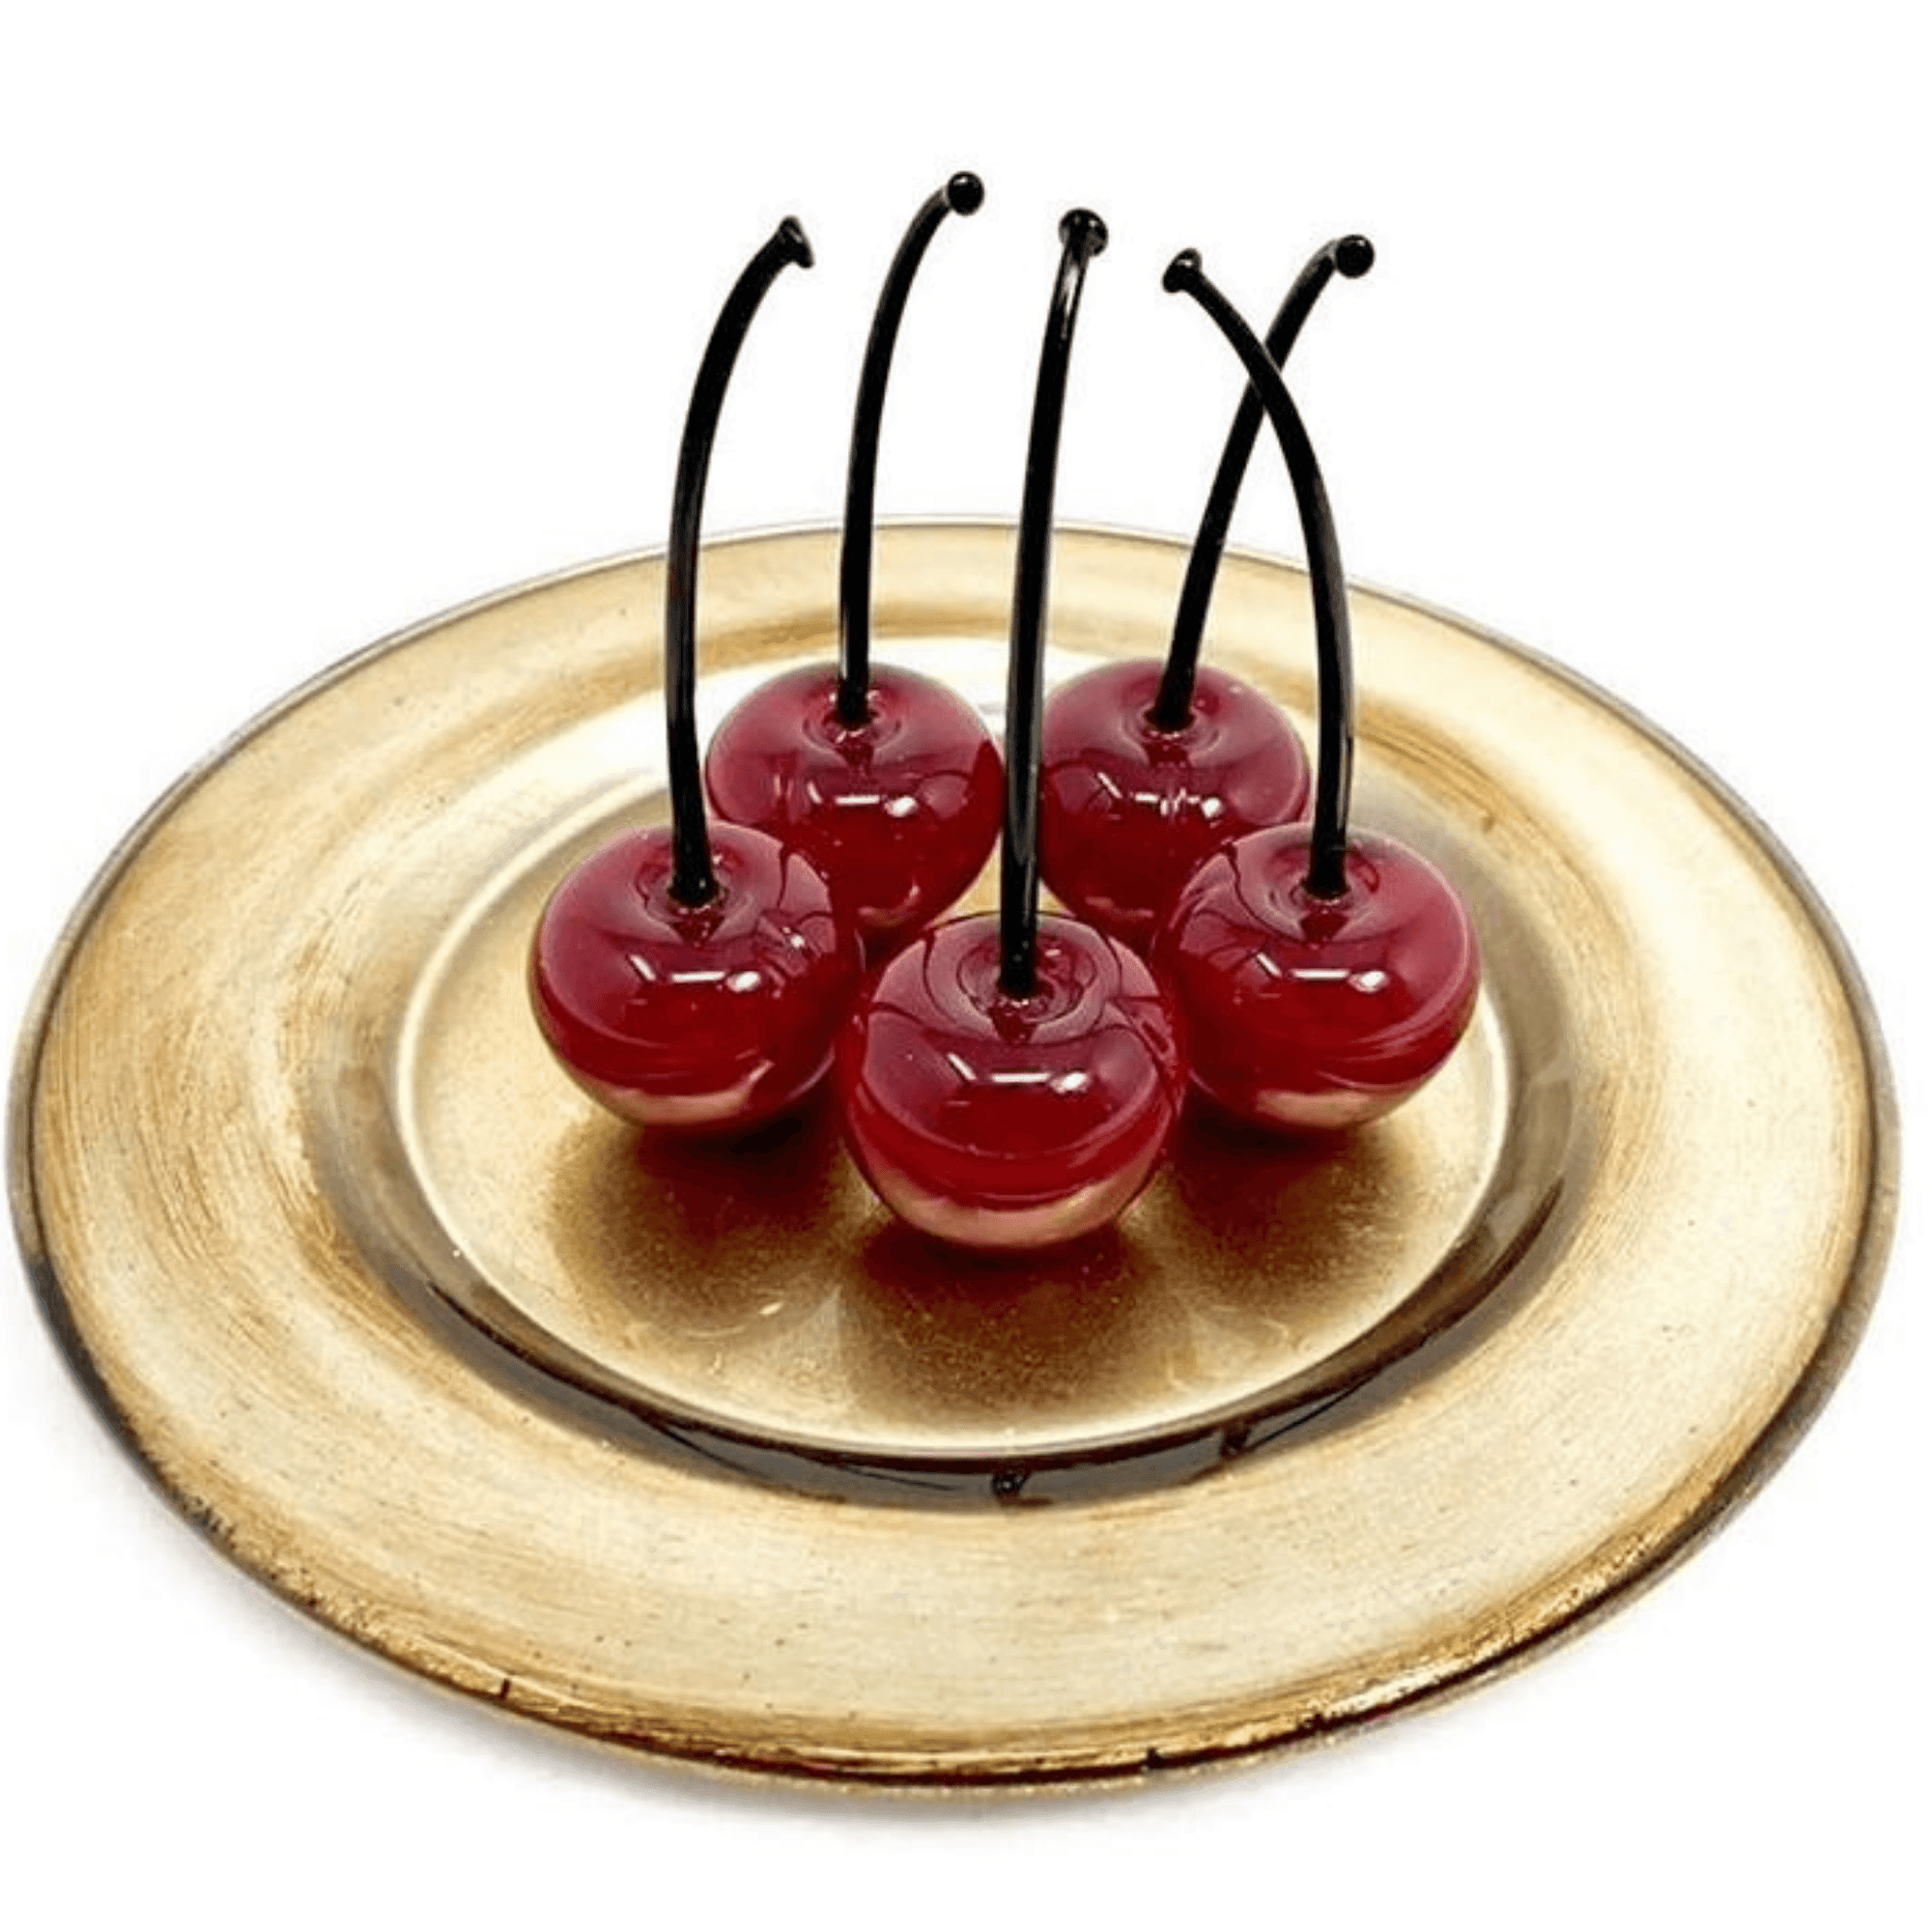 Murano Glass Cherries, Lifelike, Sets of 3 or 5, Handmade in Murano, Italy - MyItalianDecor